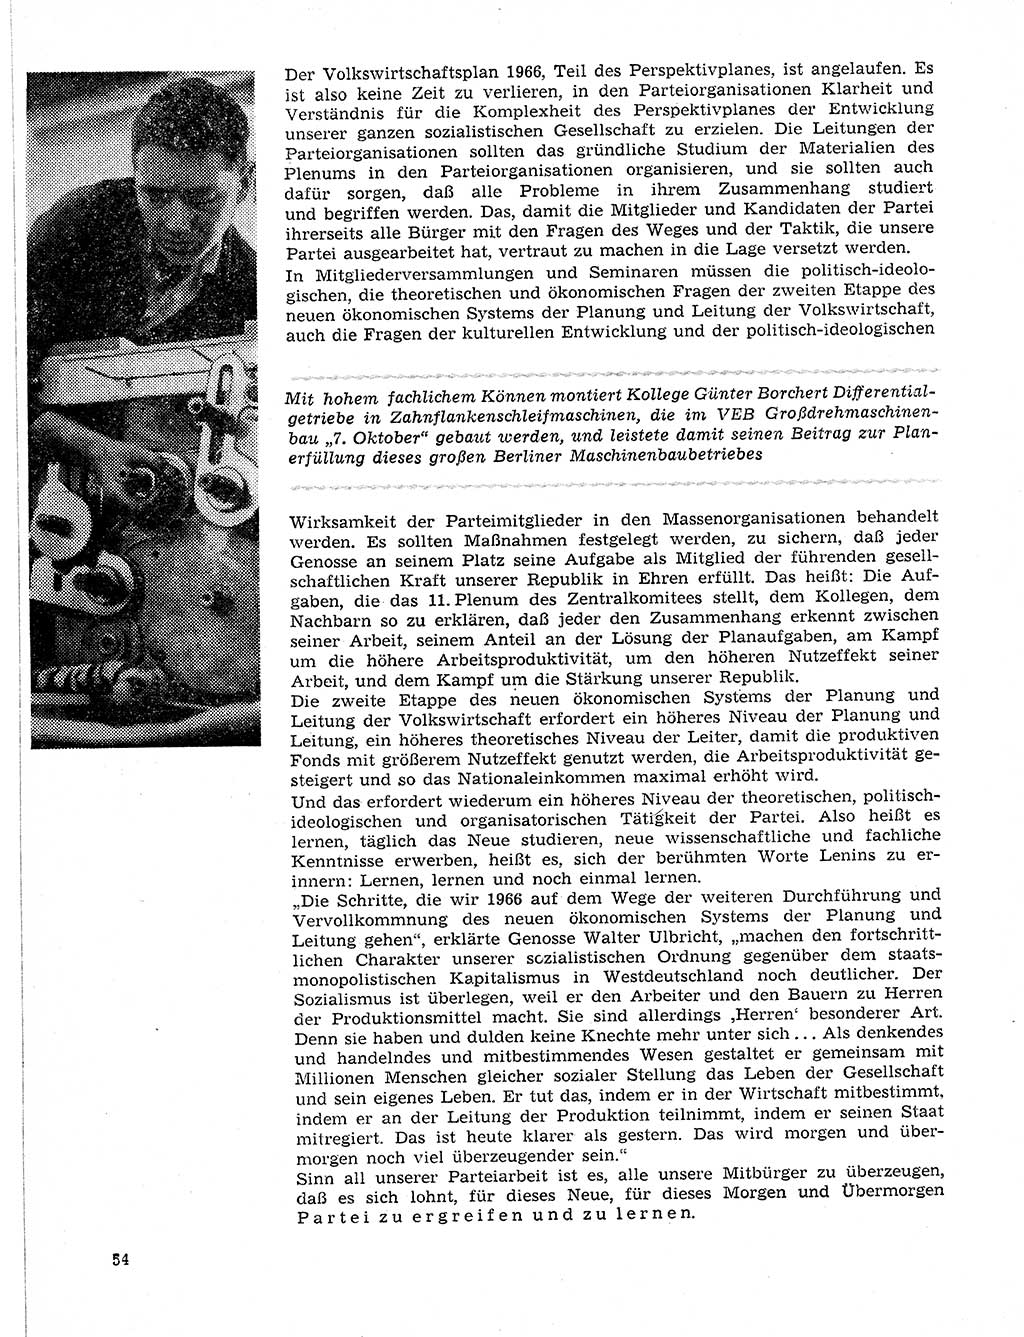 Neuer Weg (NW), Organ des Zentralkomitees (ZK) der SED (Sozialistische Einheitspartei Deutschlands) für Fragen des Parteilebens, 21. Jahrgang [Deutsche Demokratische Republik (DDR)] 1966, Seite 54 (NW ZK SED DDR 1966, S. 54)